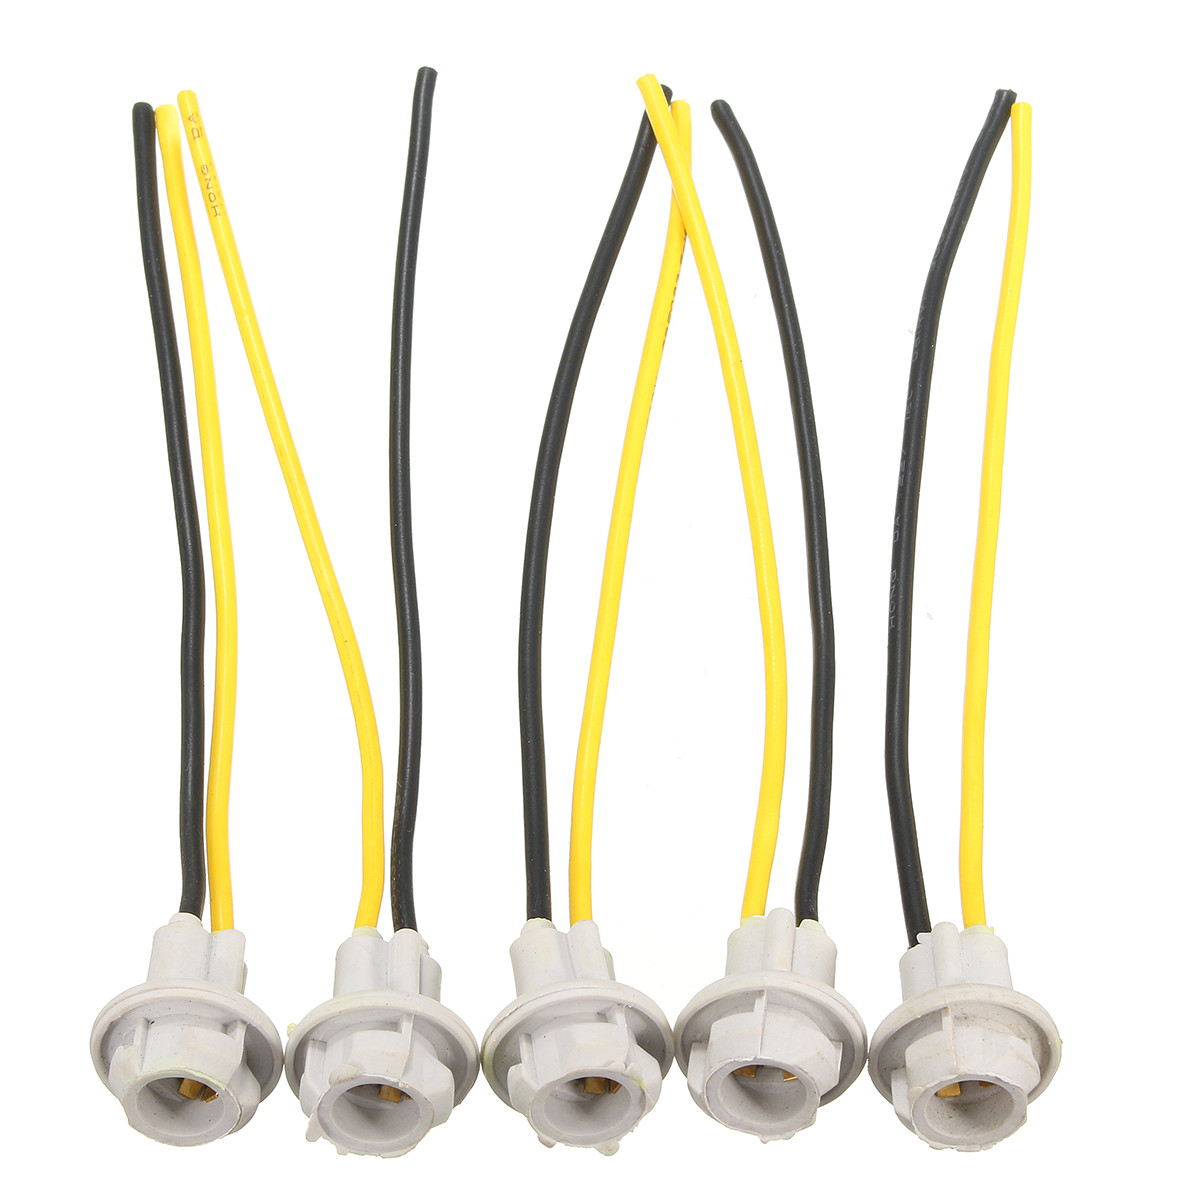 

5Pcs T10 Коннектор Разъем Светильник для лампы накаливания PigTail T10 168 194 Резиновый клин LED